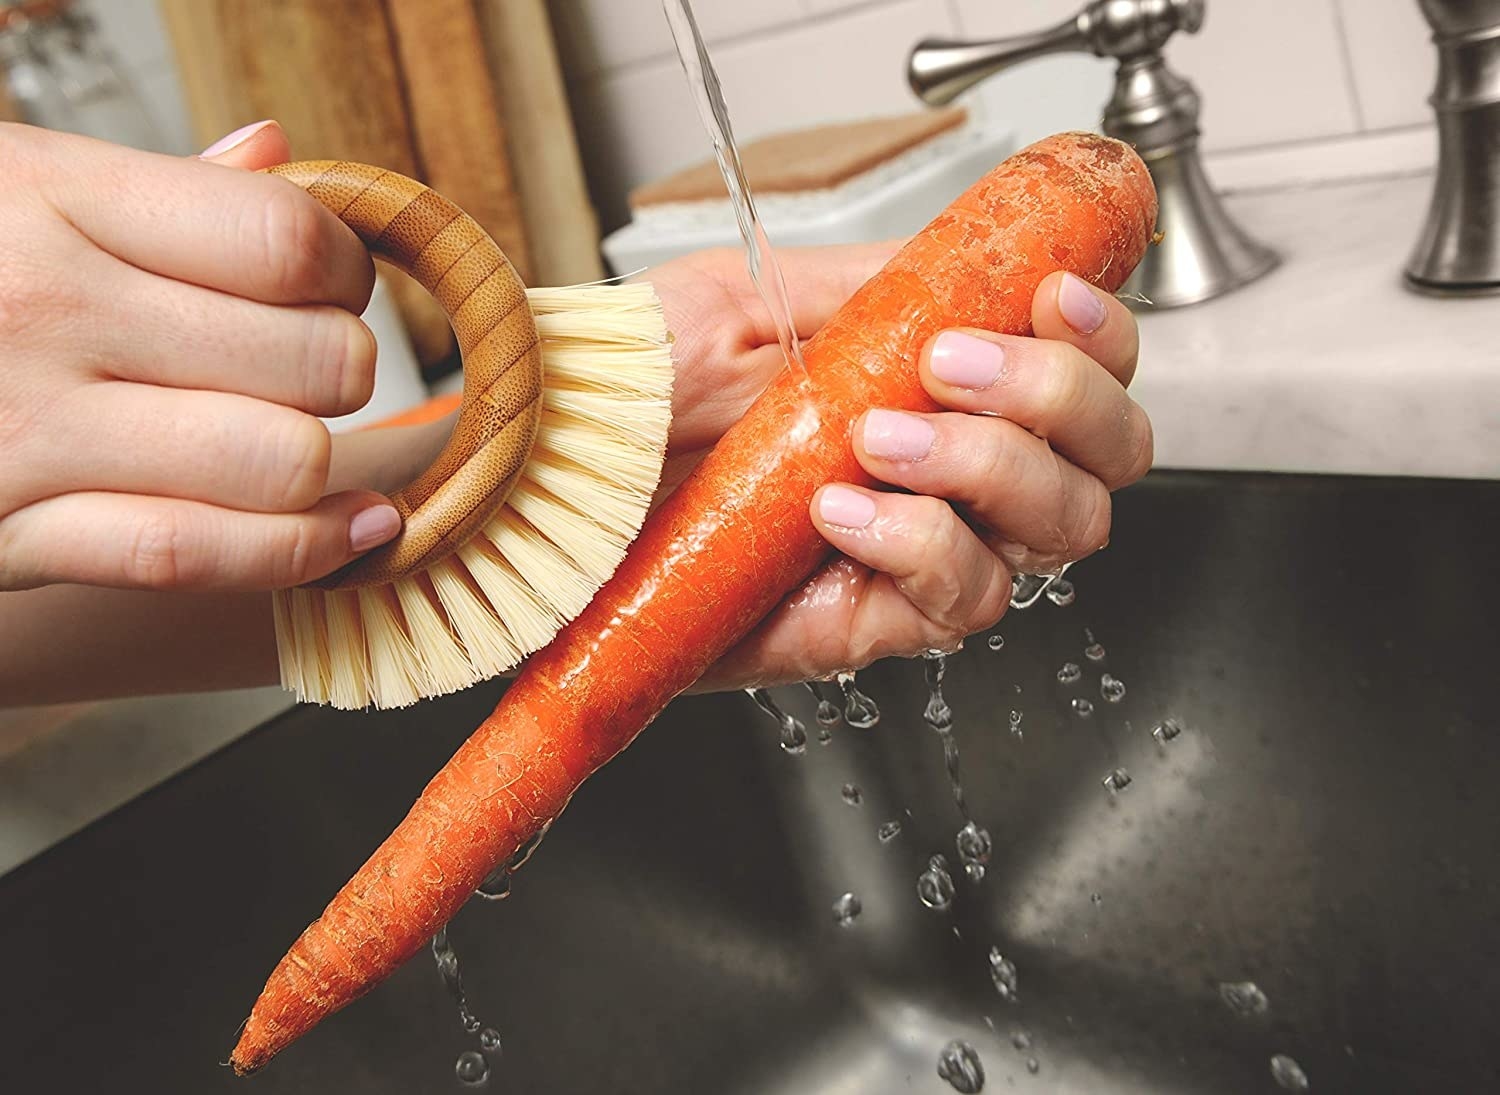 Model using vegetable brush to wash carrot